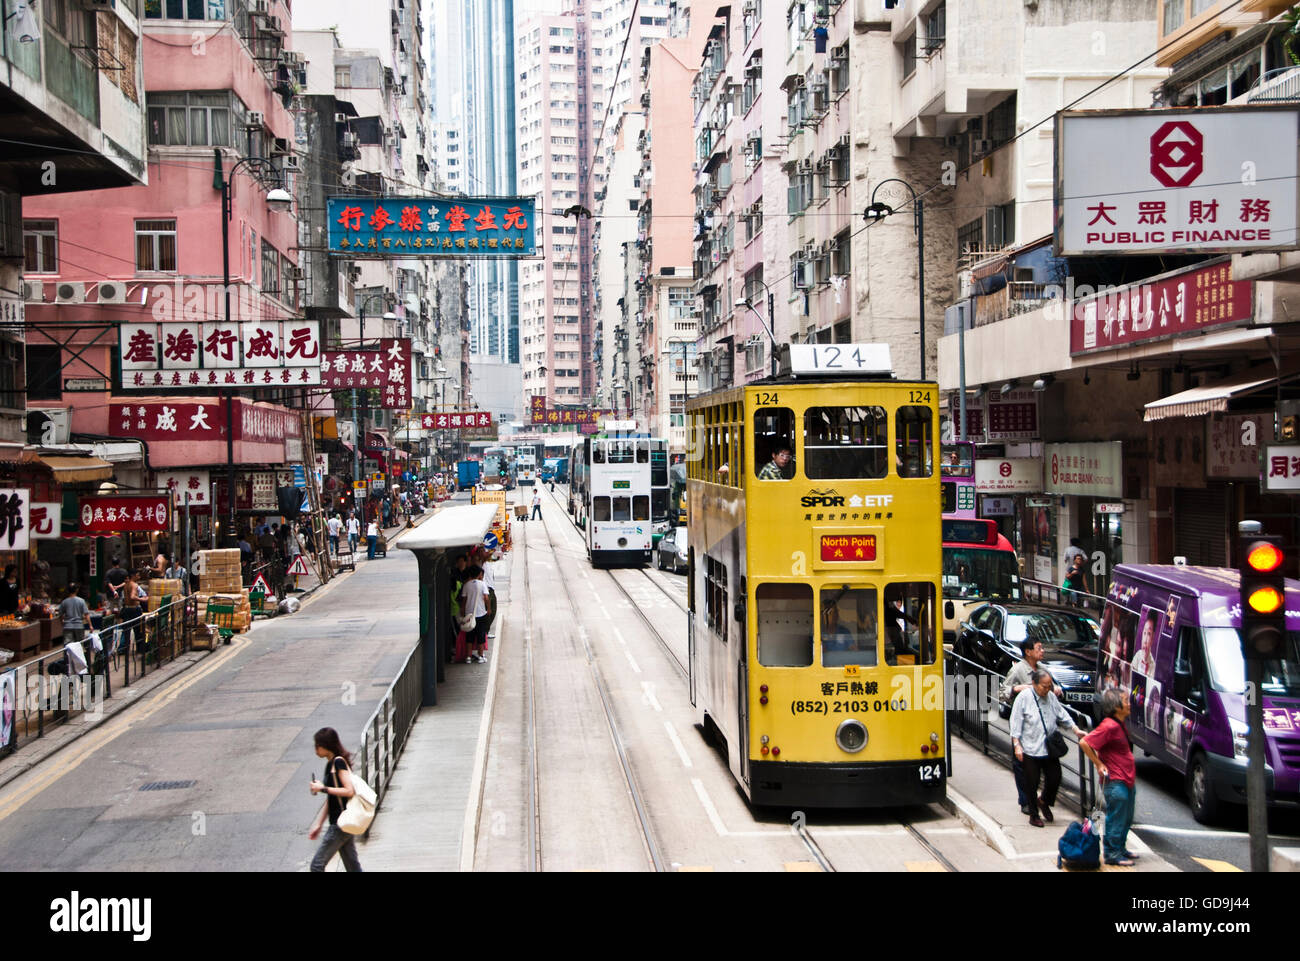 Le centre-ville de l'île de Hong Kong, Chine, Asie Banque D'Images